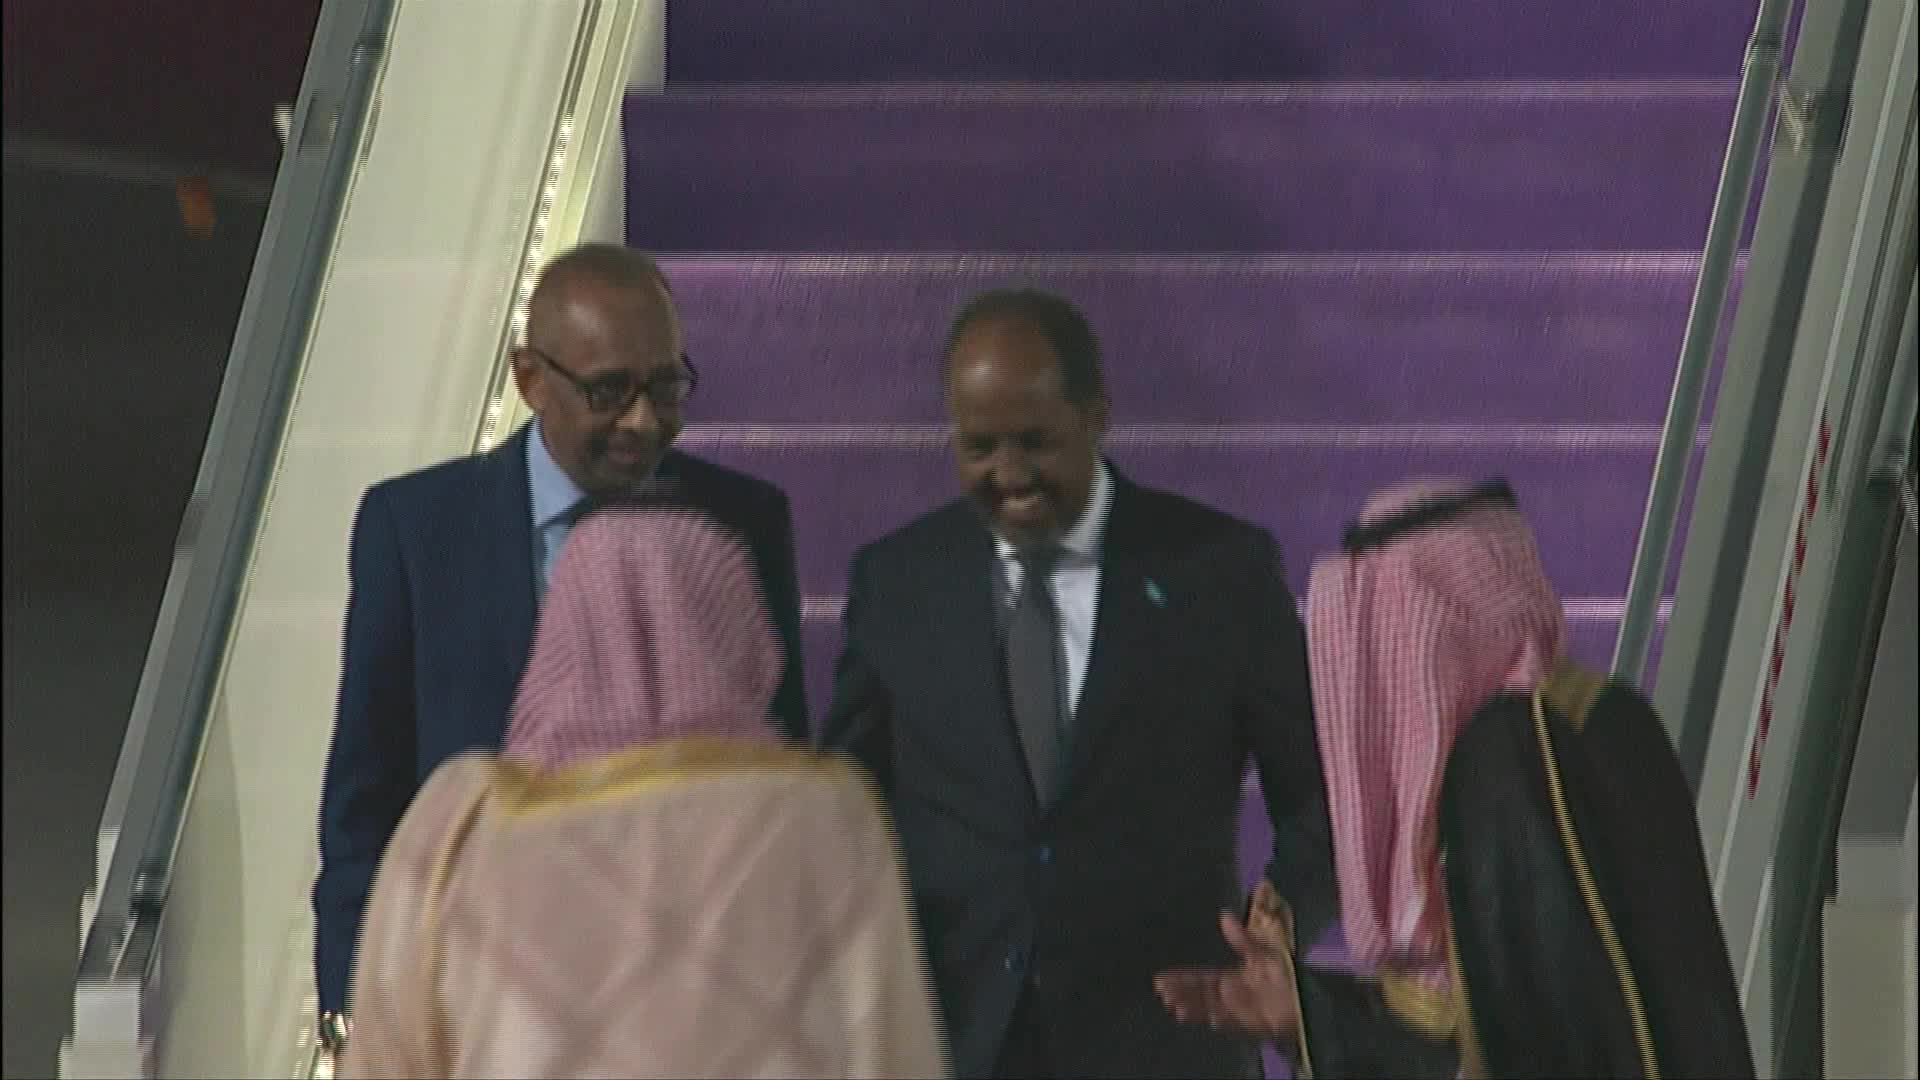 الرئيس الصومالي حسن شيخ محمود يصل الي جدة للمشاركة في القمة العربية - snapshot 3.31